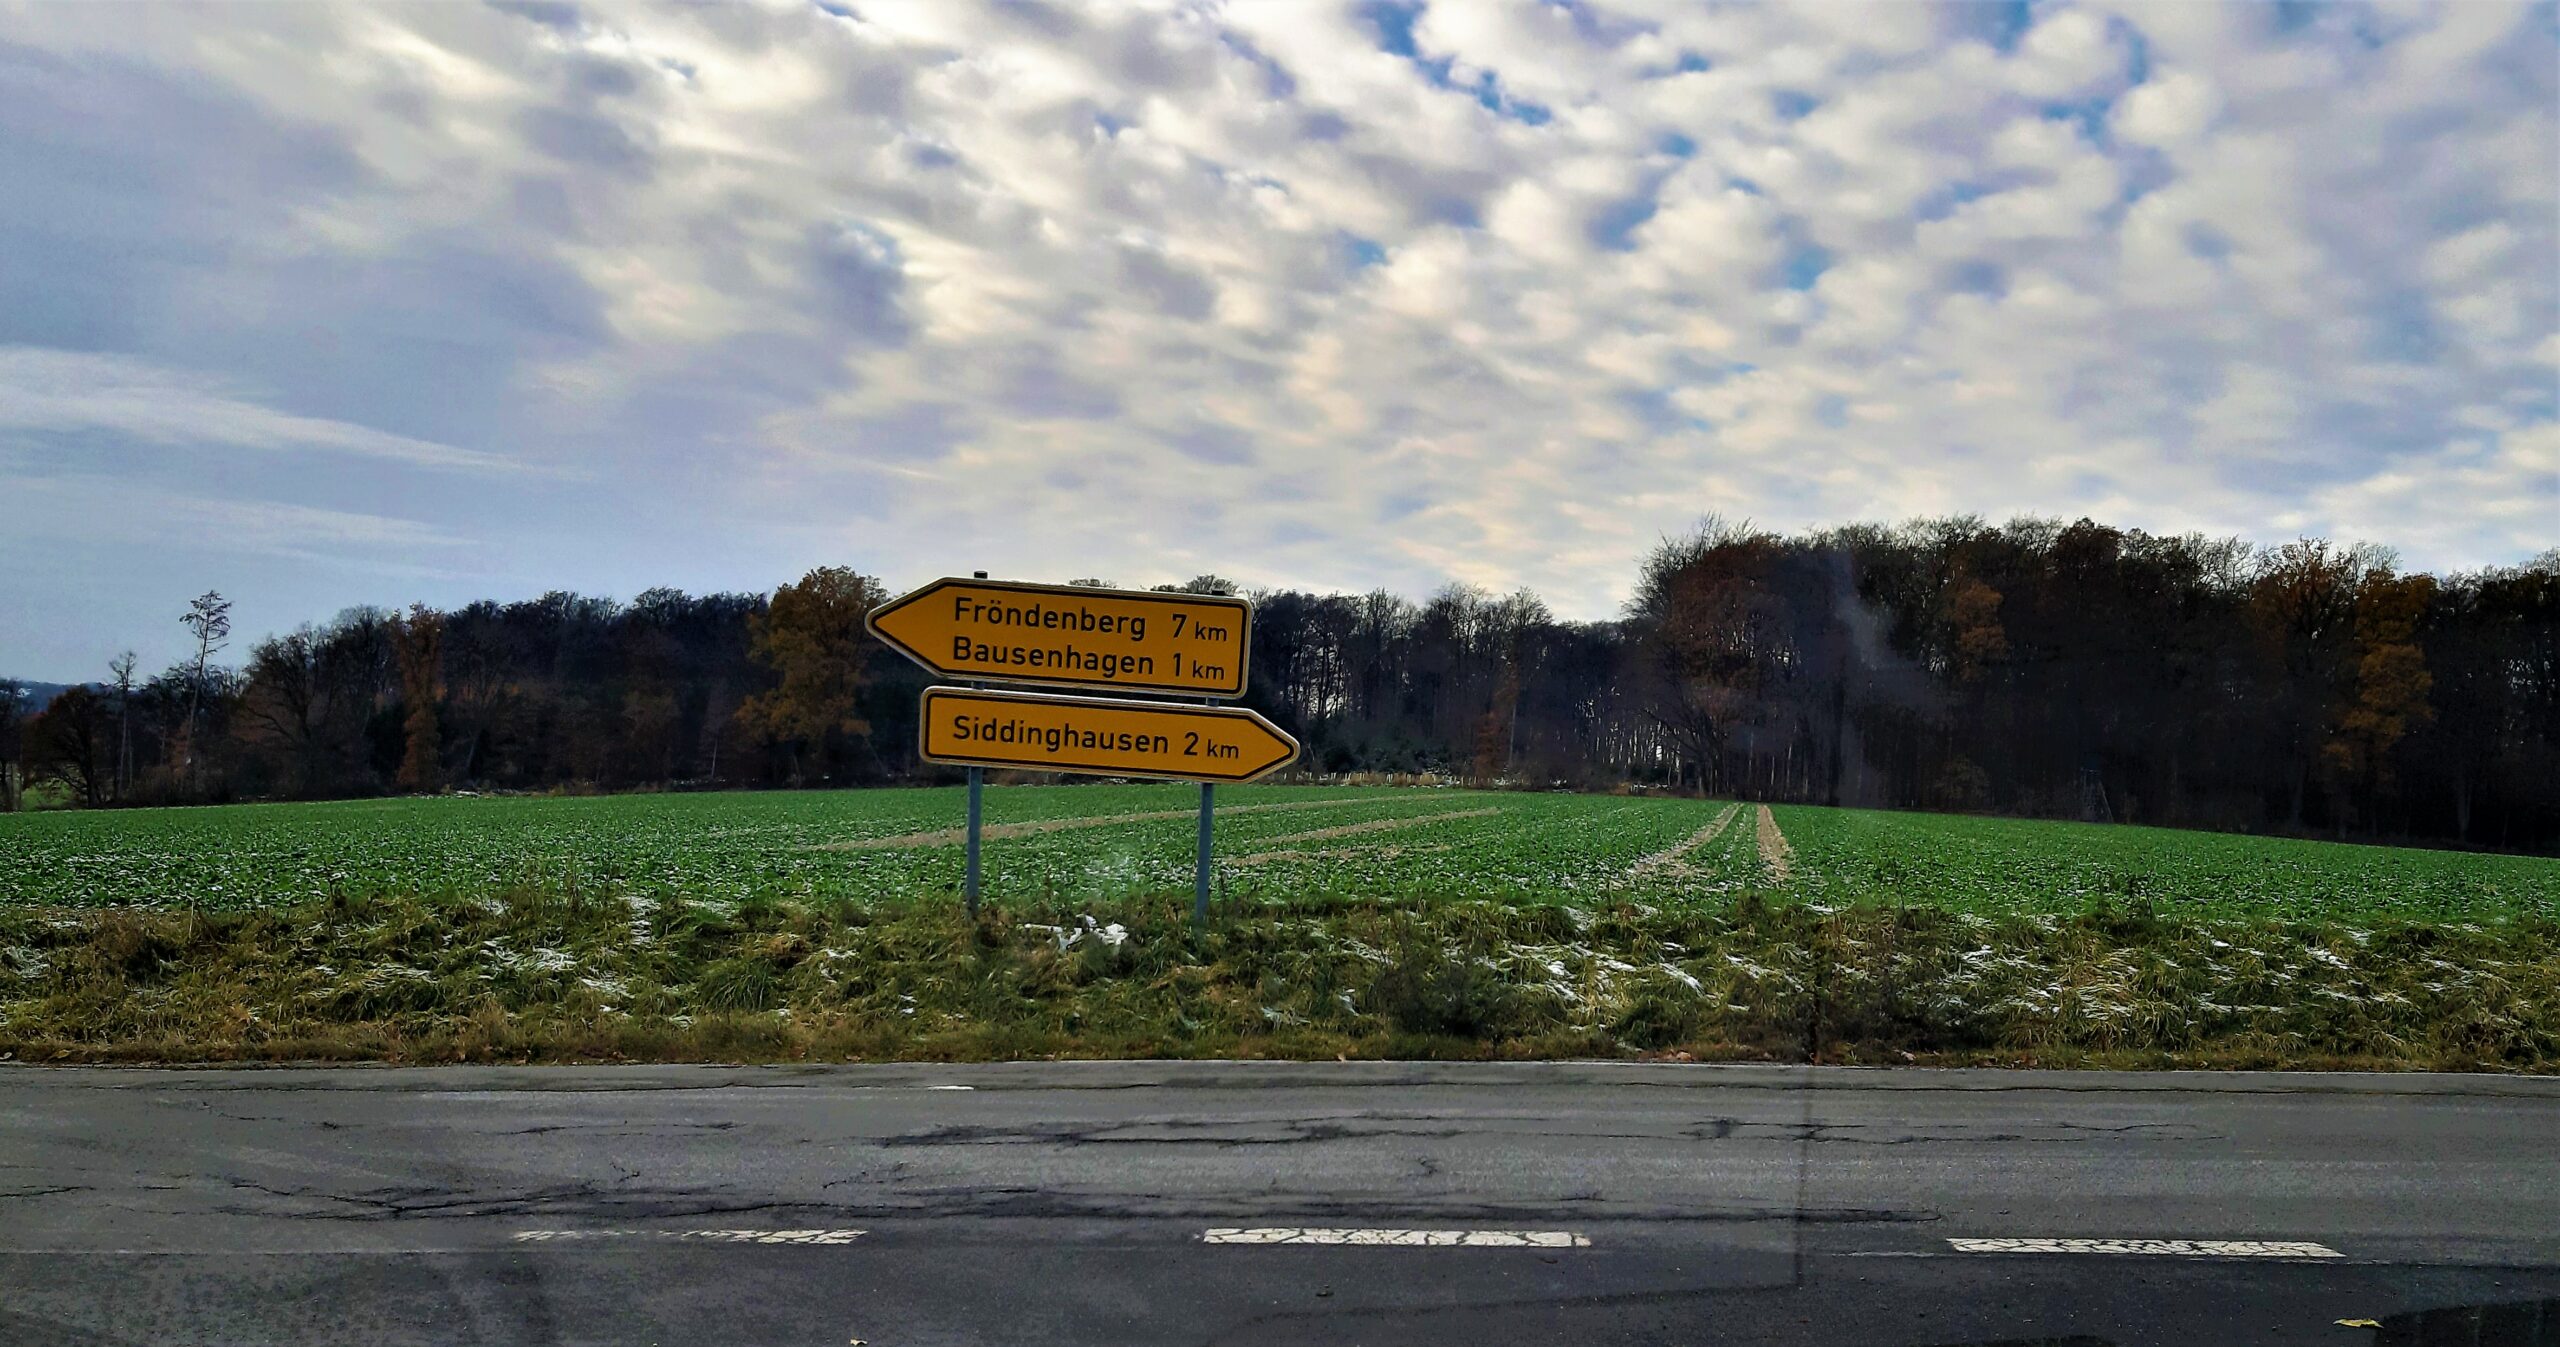 Trümmerpiste Fröndenberg-Siddinghausen-Hemmerde: Land saniert die L881 für 1,3 Mio. €